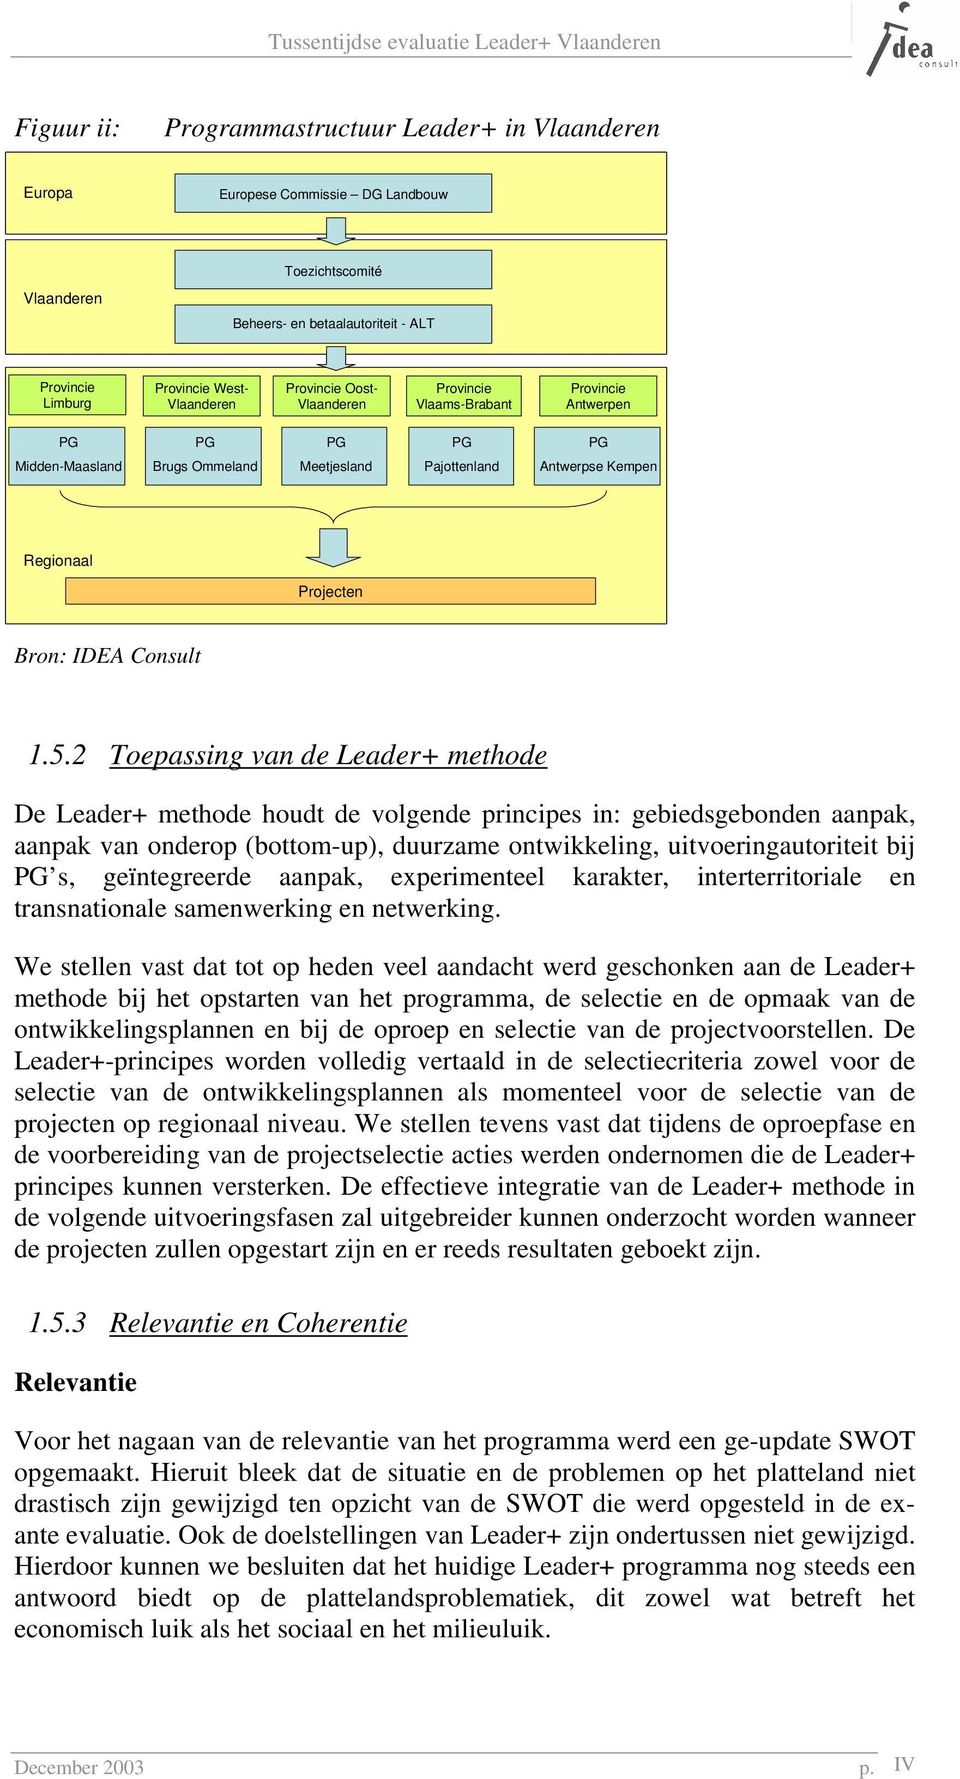 1.5.2 Toepassing van de Leader+ methode De Leader+ methode houdt de volgende principes in: gebiedsgebonden aanpak, aanpak van onderop (bottom-up), duurzame ontwikkeling, uitvoeringautoriteit bij PG